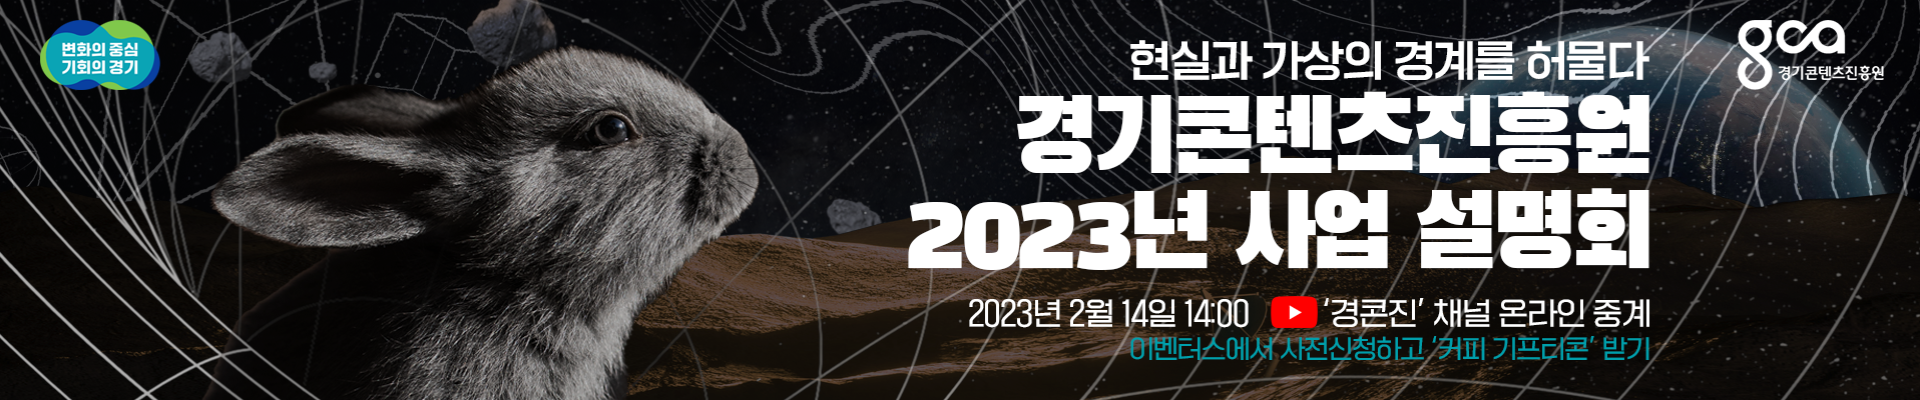  2023년 경기콘텐츠진흥원 온라인 사업설명회